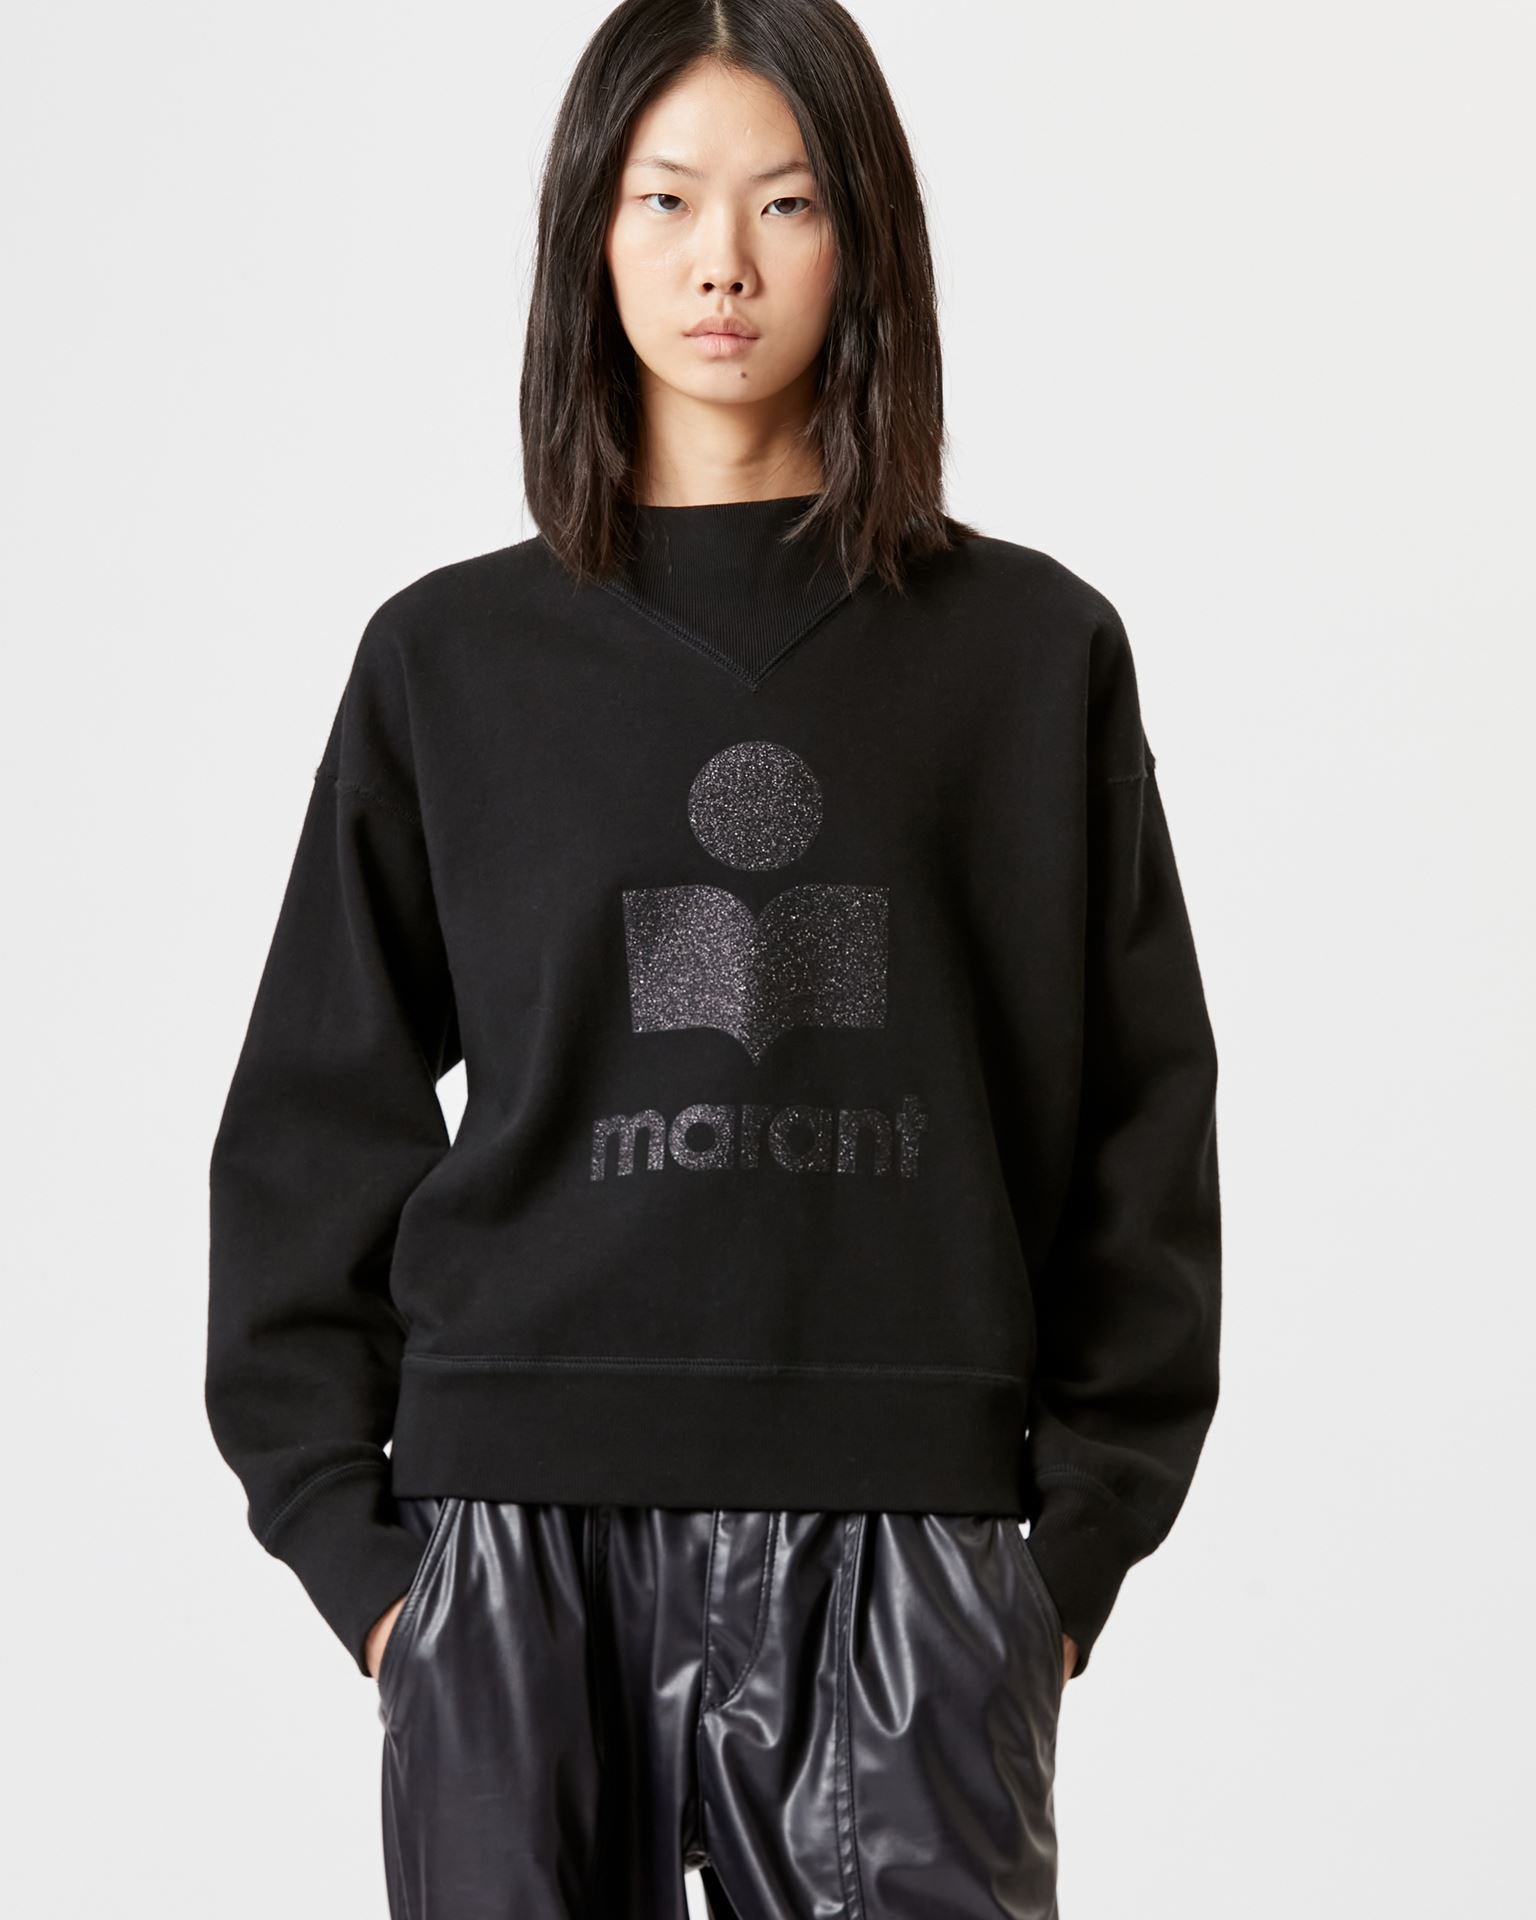 Moby sweatshirt, black glitter